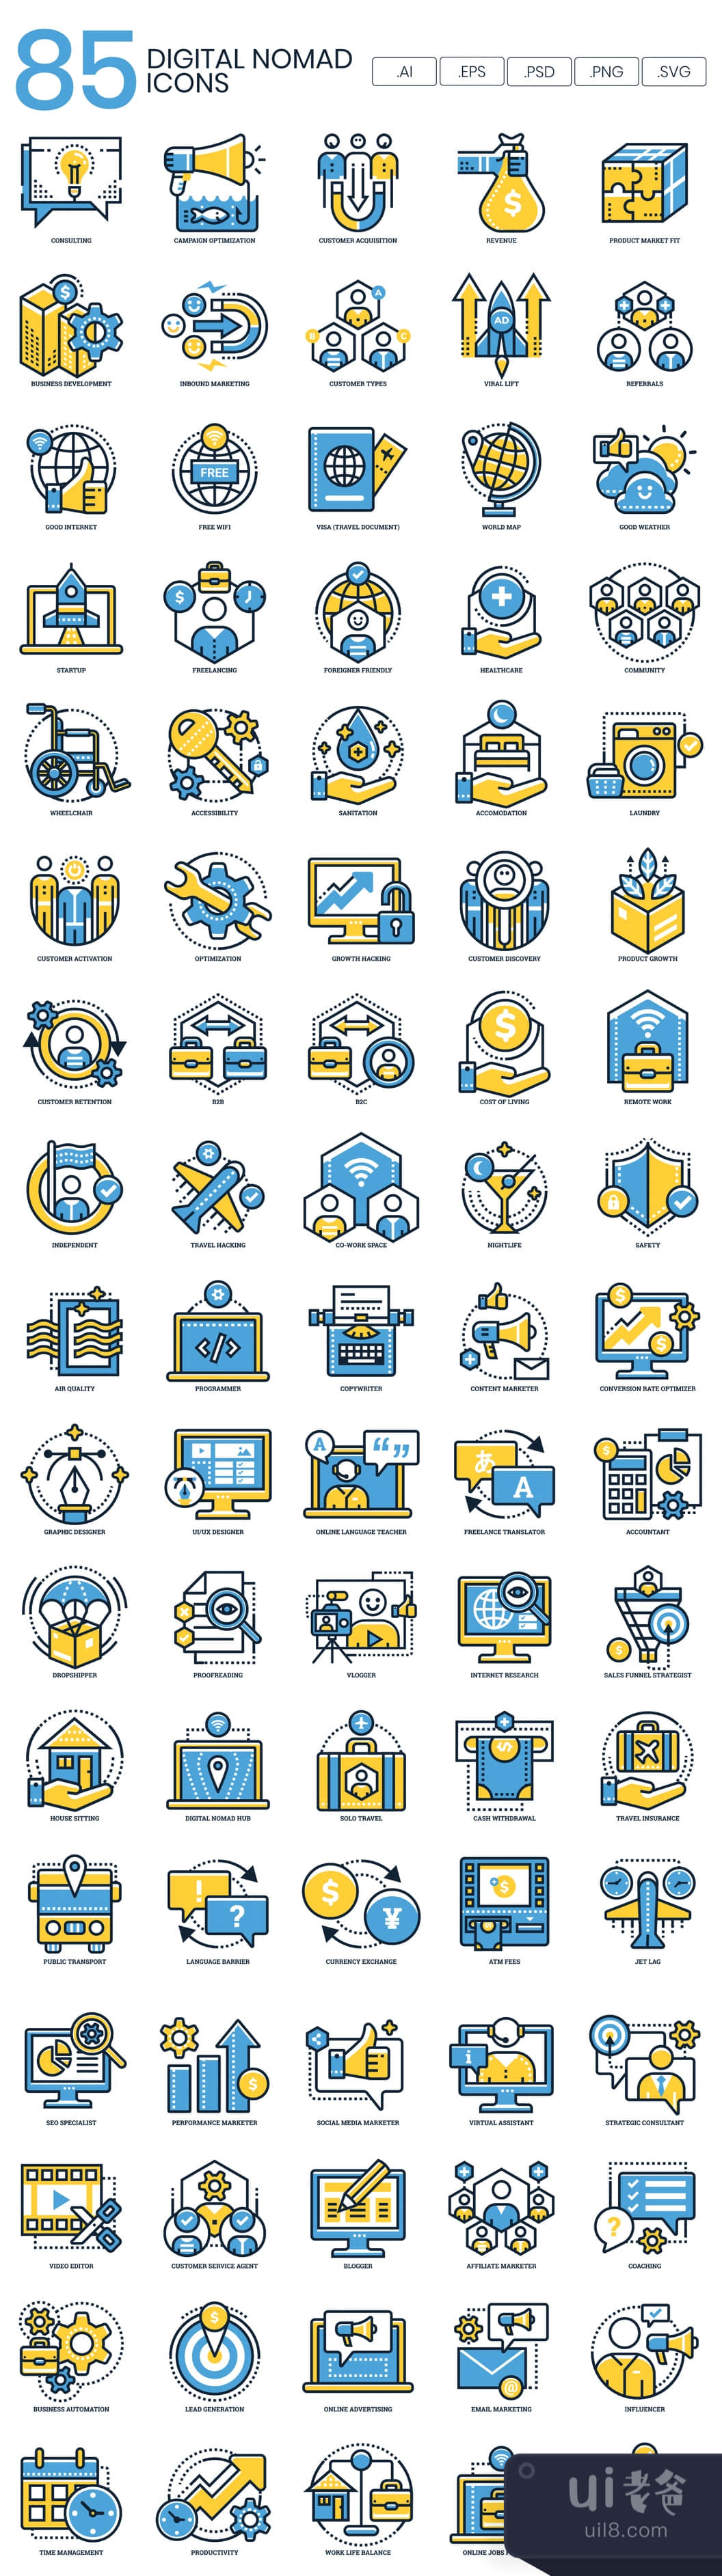 85个数字游民图标 (85 Digital Nomad Icons)插图